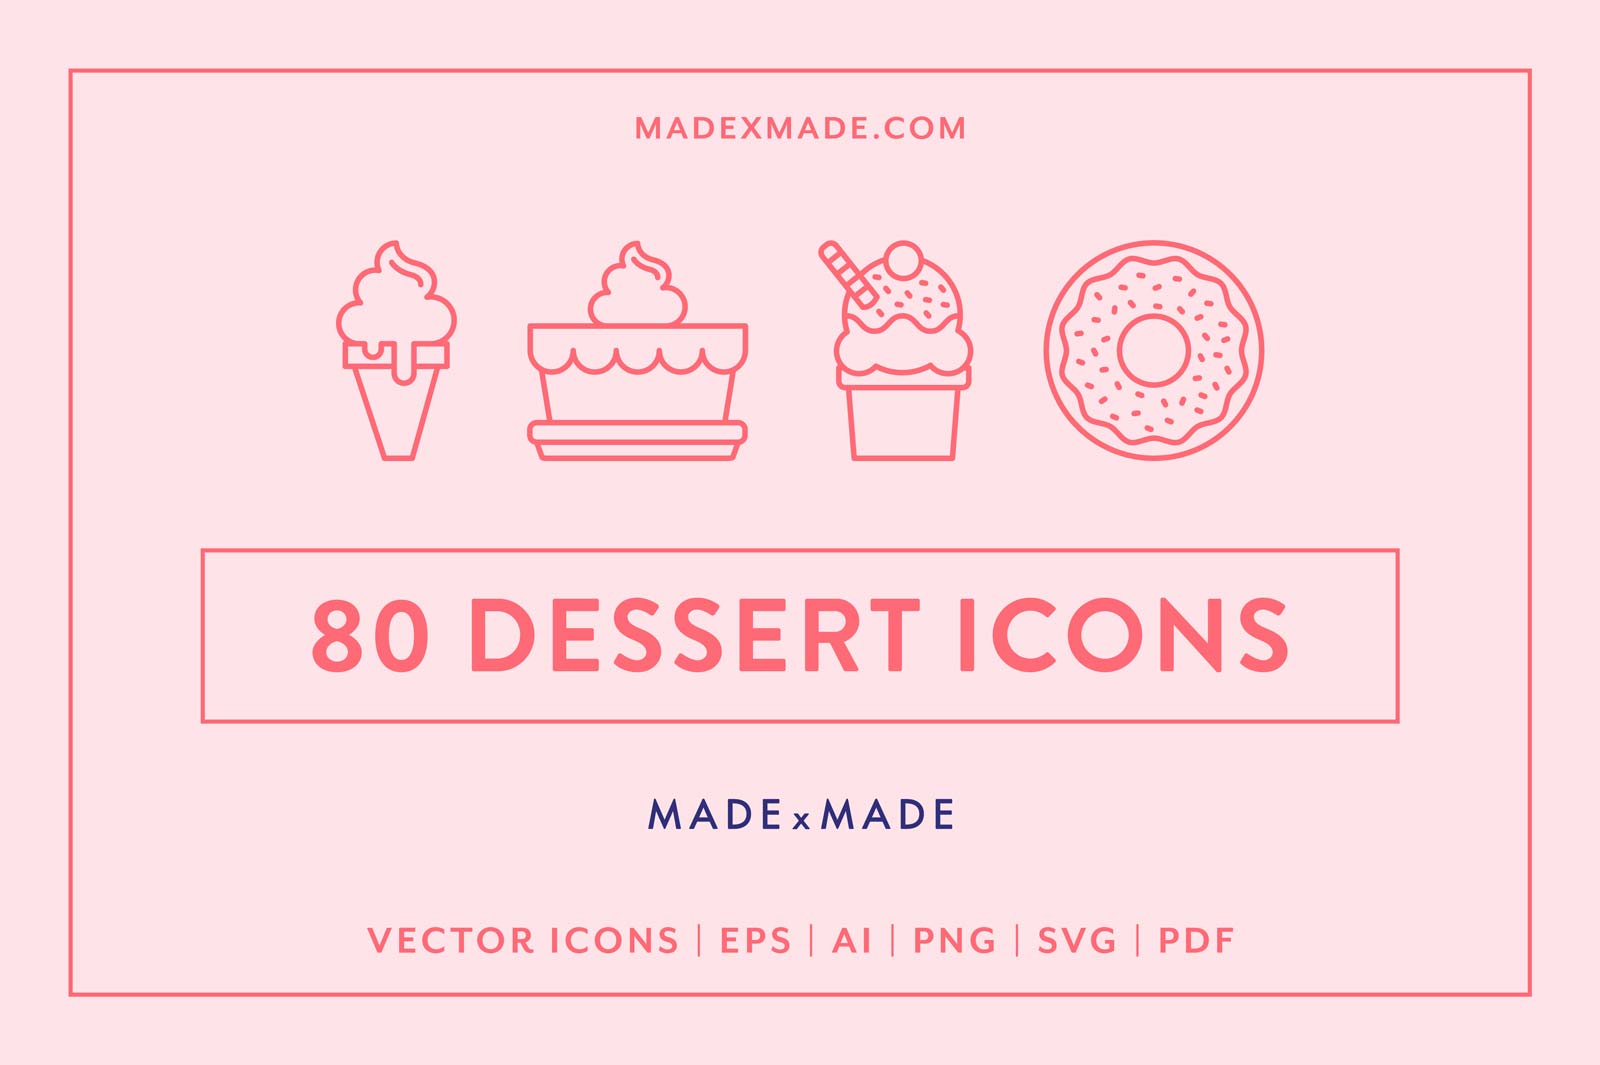 made x made icons dessert